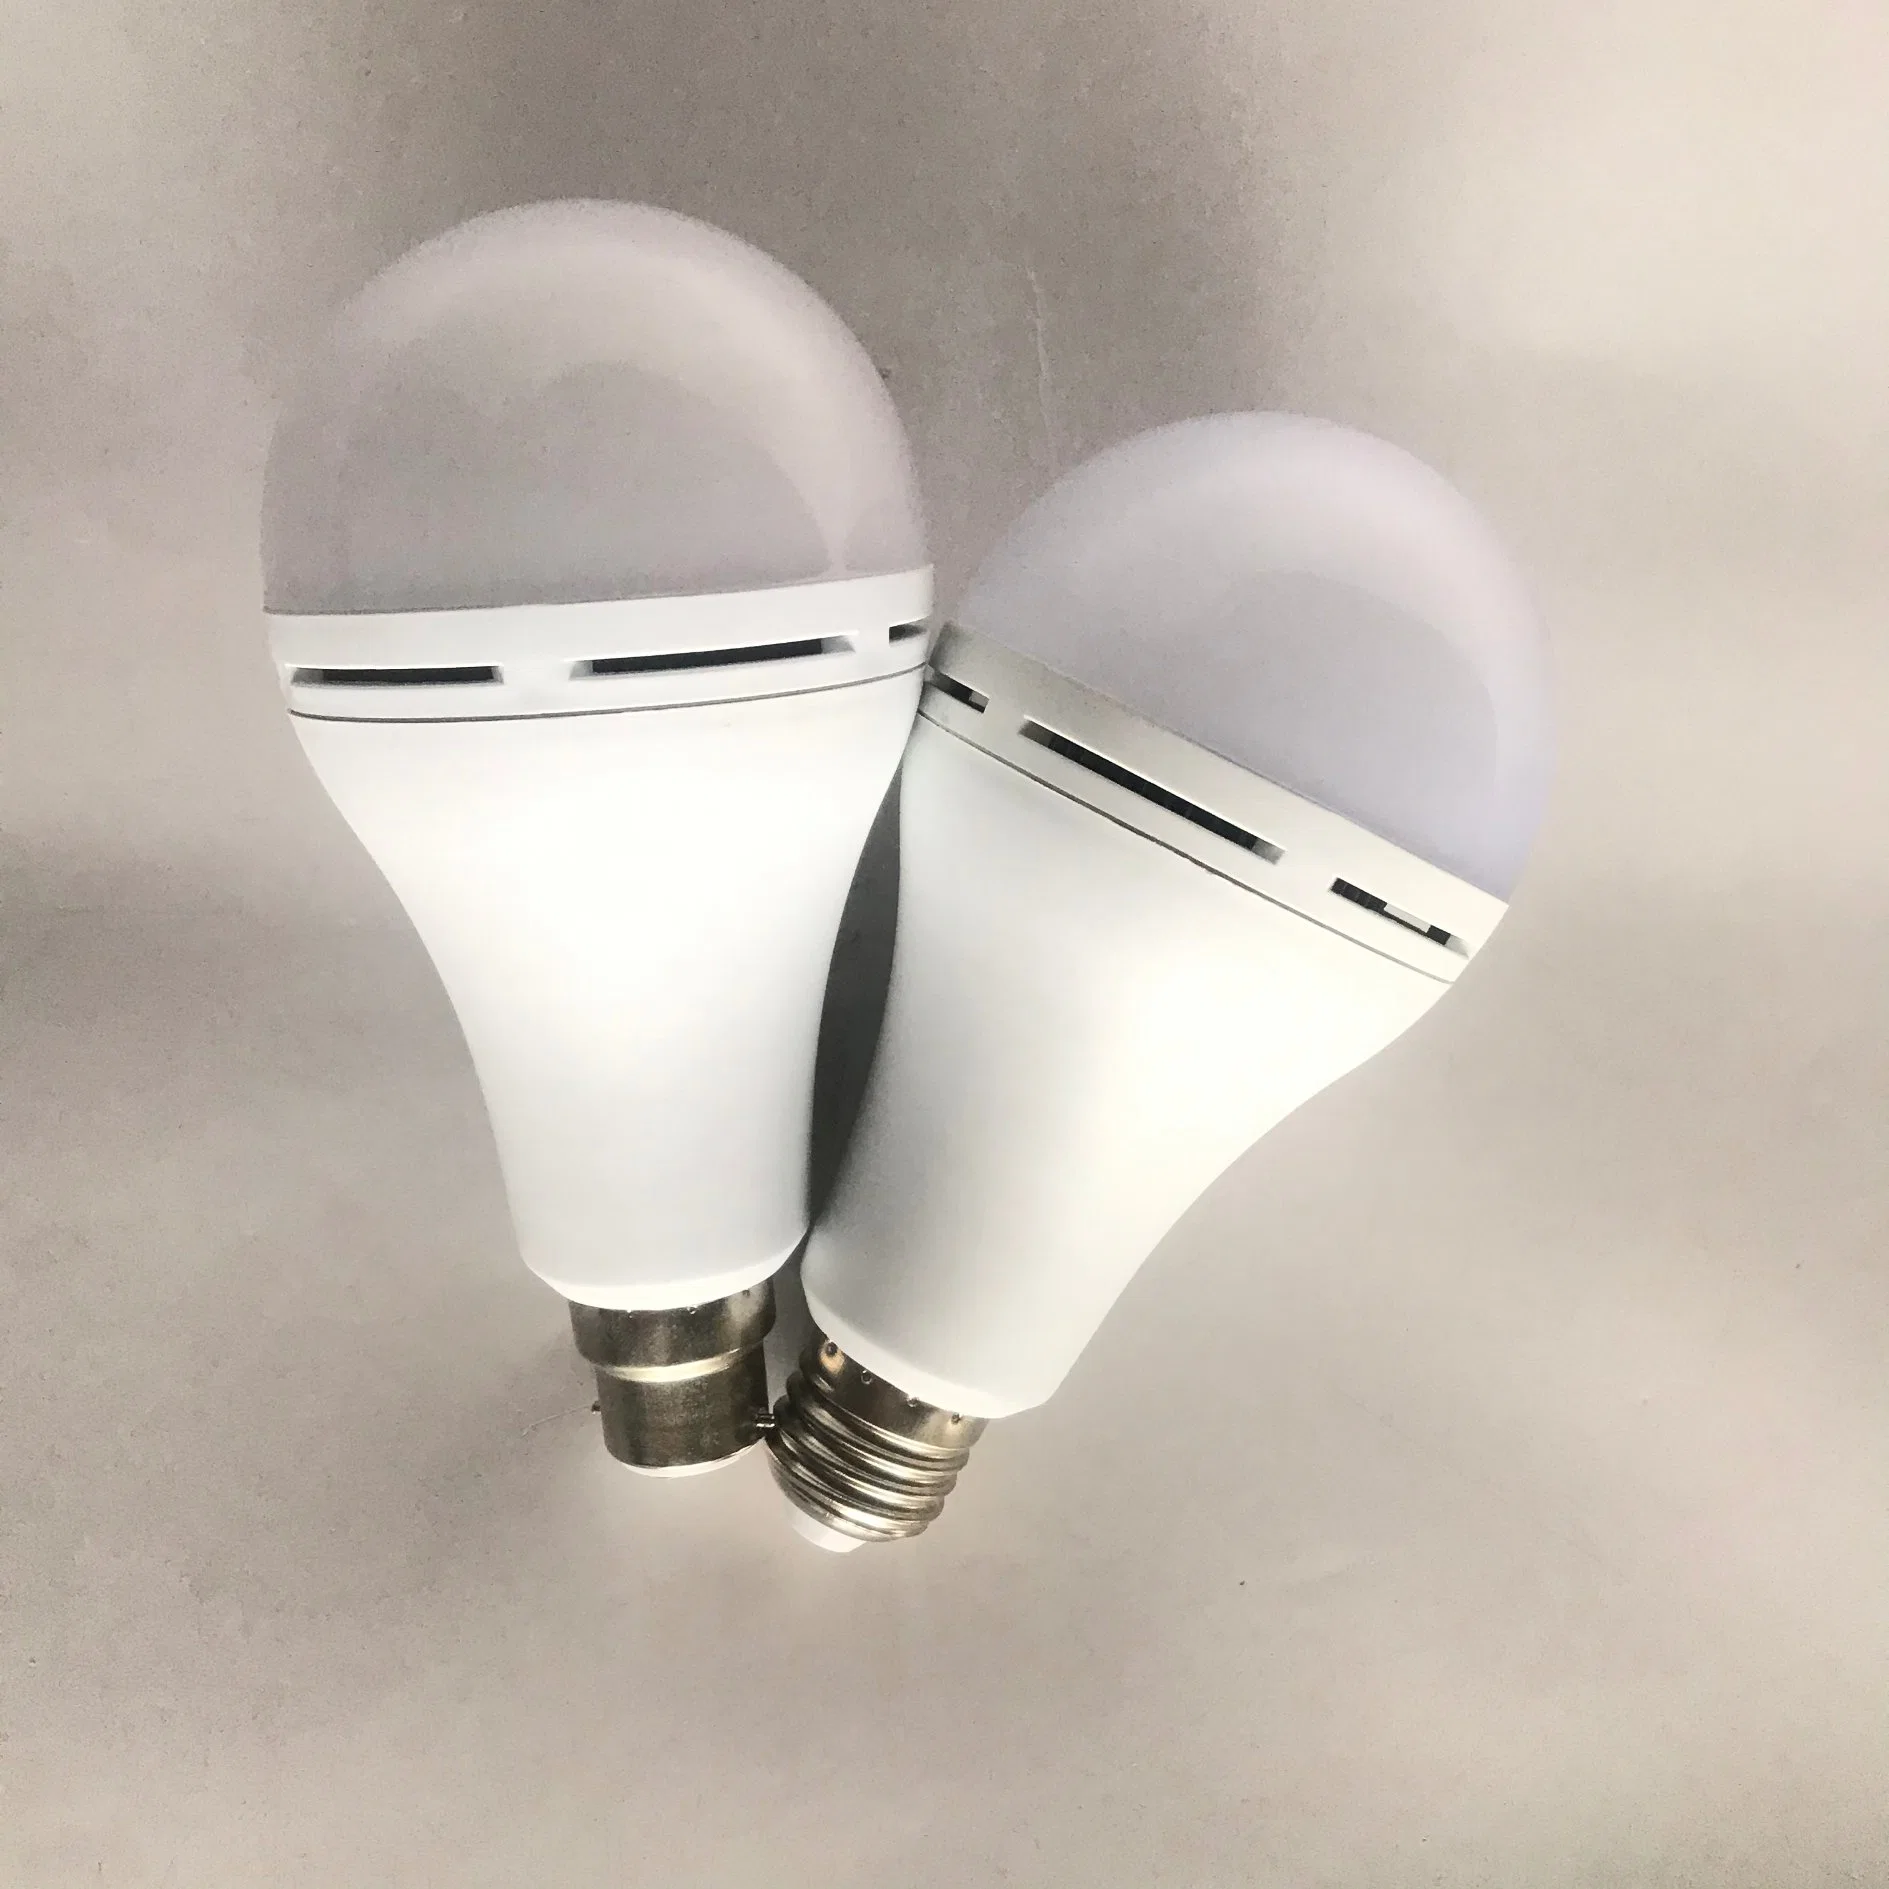 Longue durée Touch Light E27 AC DC Lampe LED de secours rechargeable